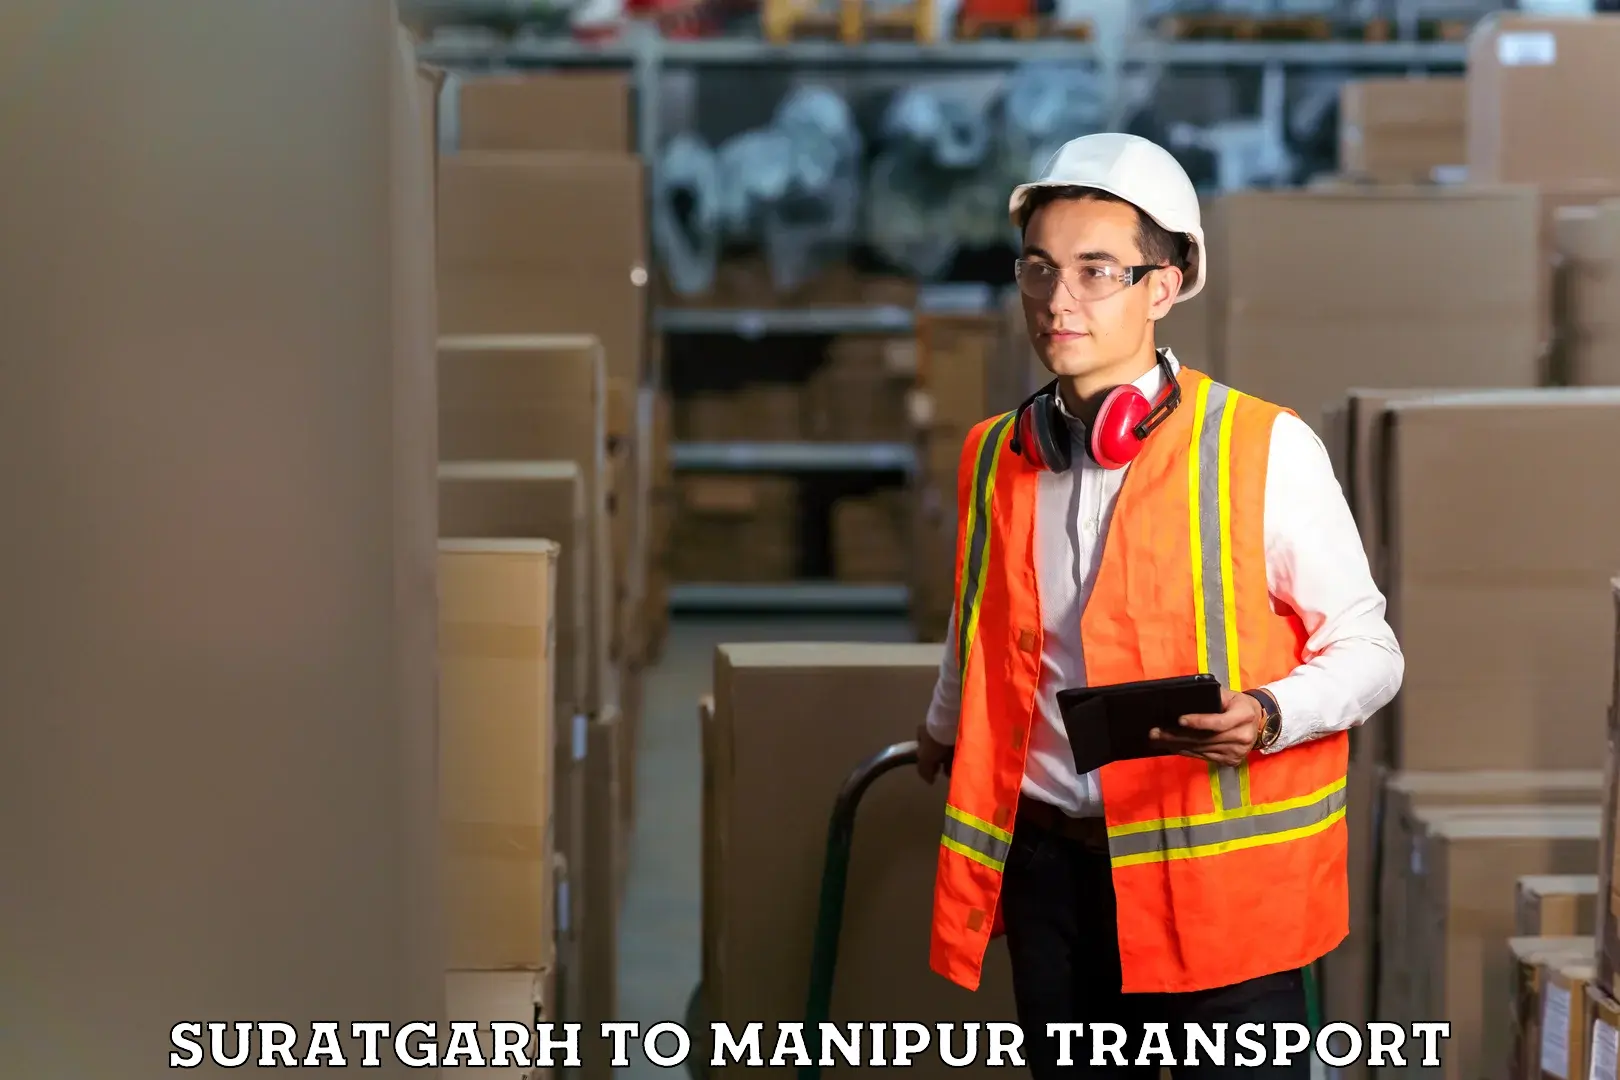 Interstate transport services Suratgarh to Chandel